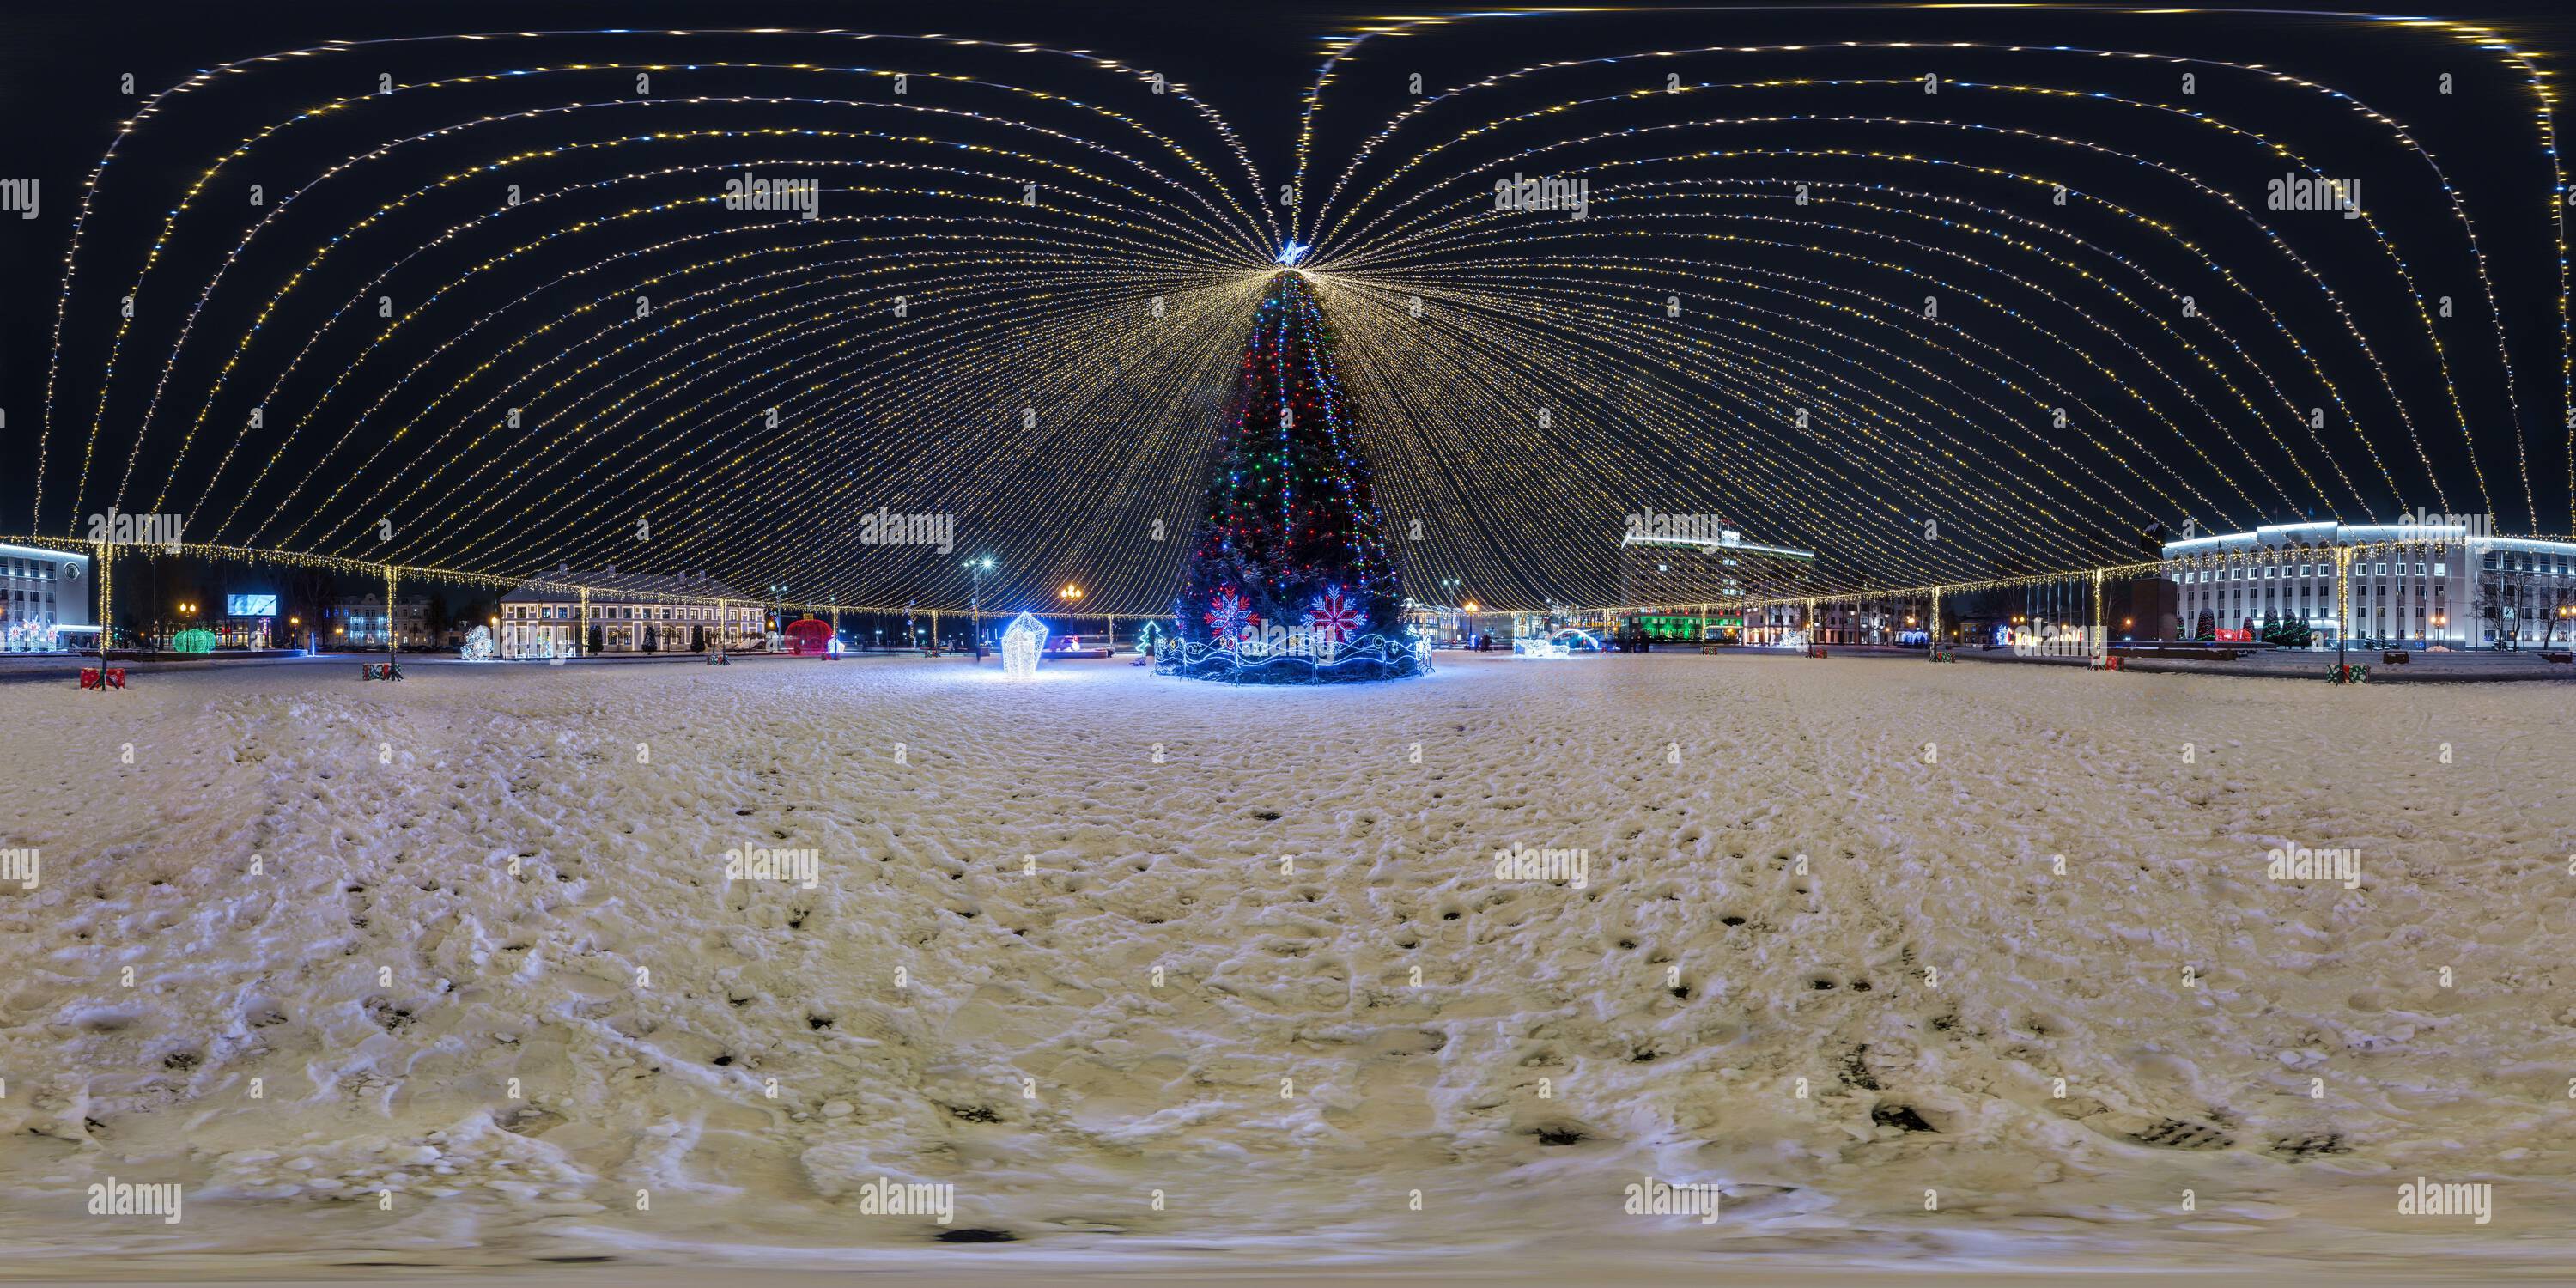 Vue panoramique à 360° de Nuit pleine 360 panorama sur la place avec arbre de Noël avec illumination en forme de tente sur le nouvel an en projection équirectangulaire avec zénith et nadi